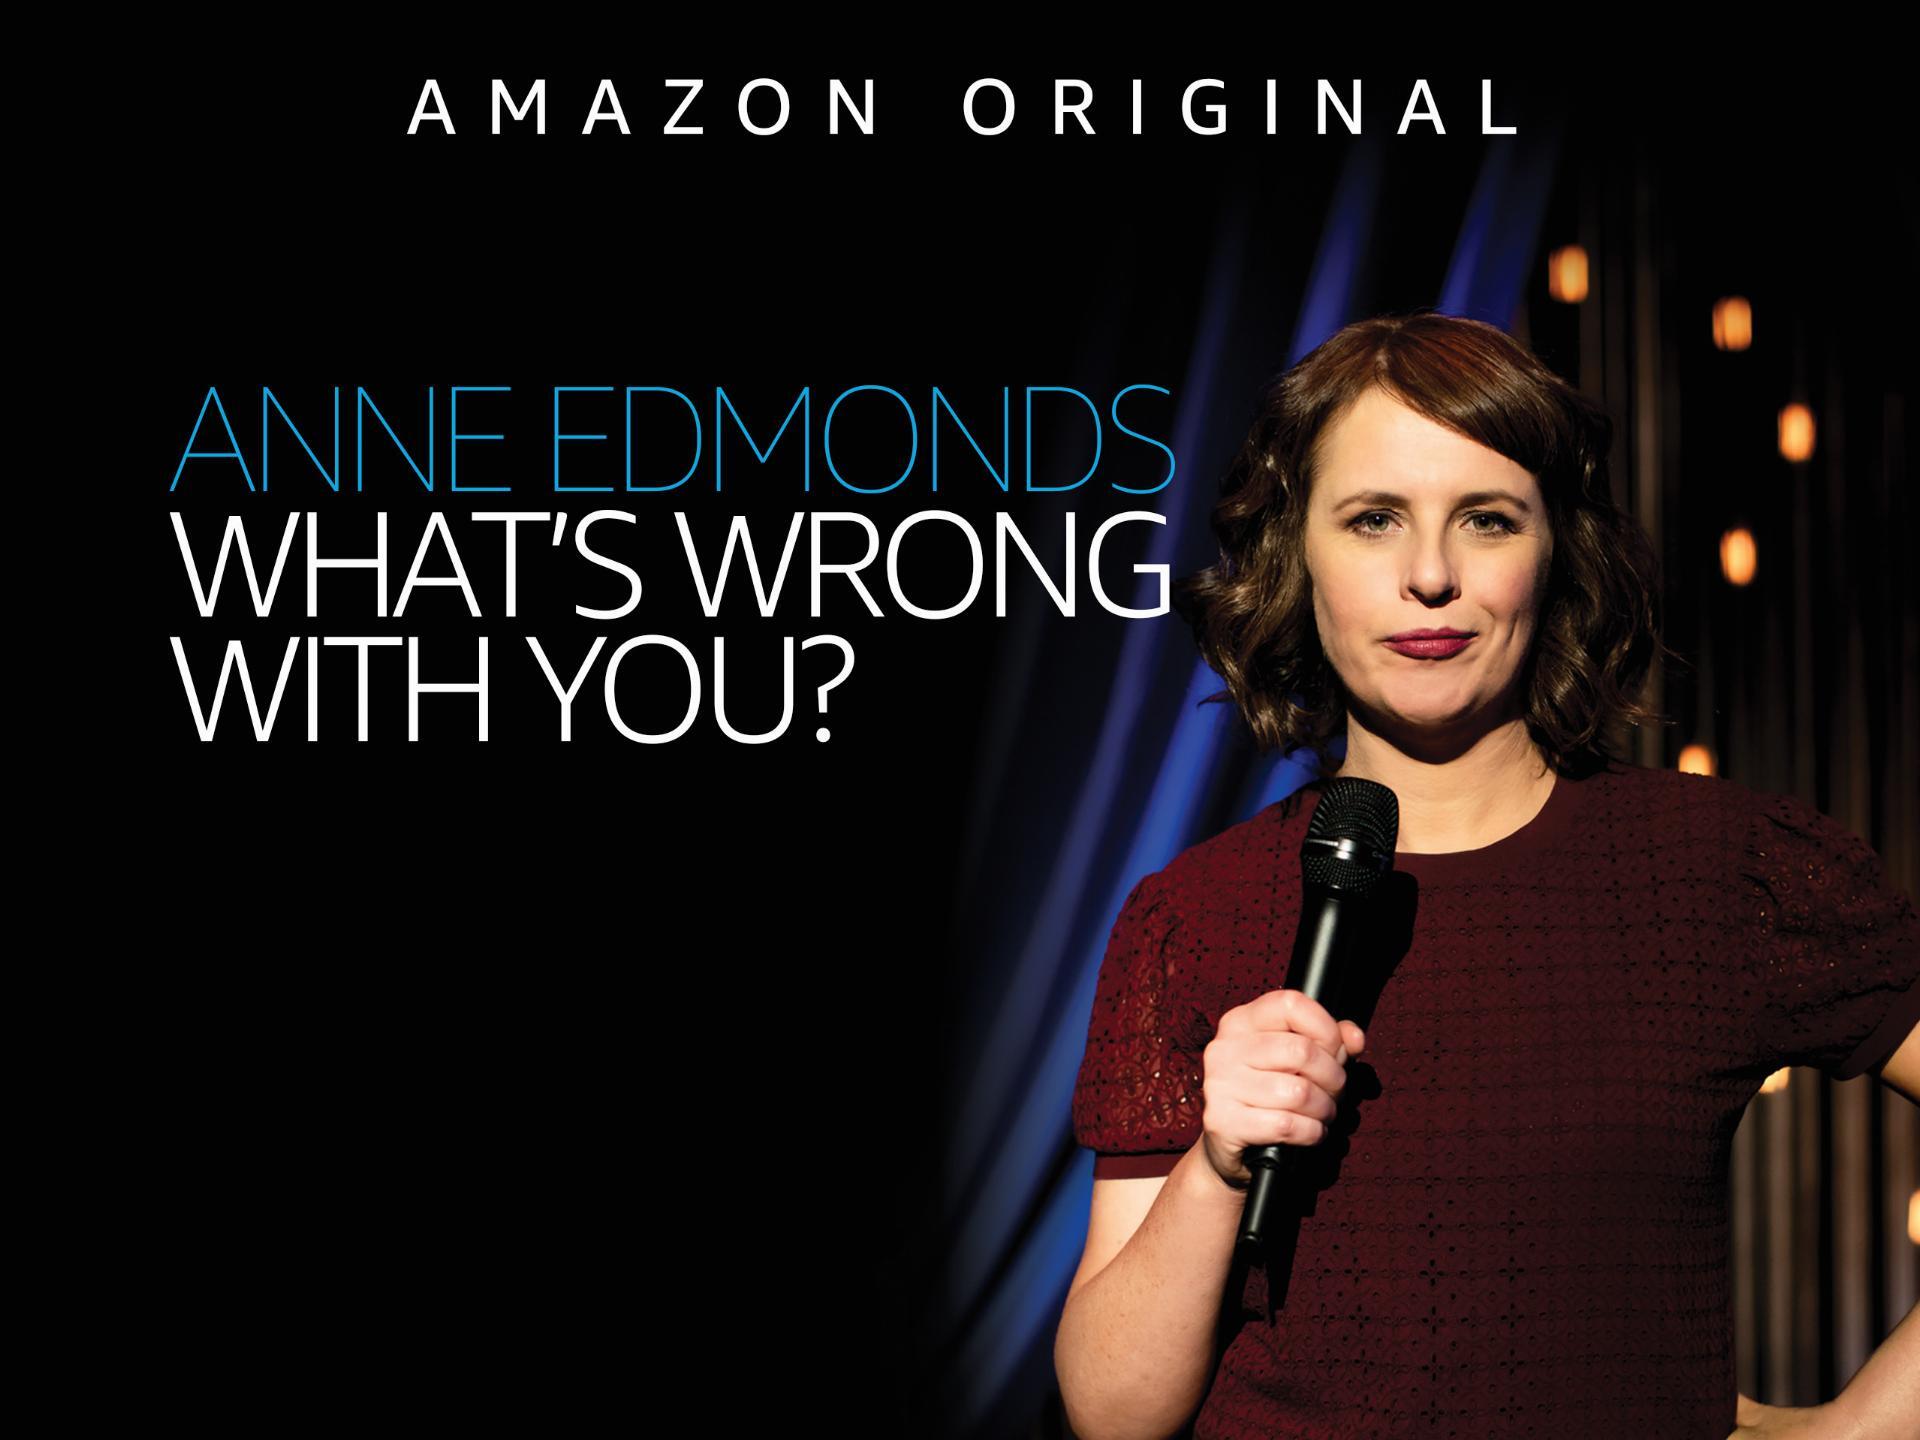 ენი ედმონდსი: რა გჭირს? / Anne Edmonds: What's Wrong with You?